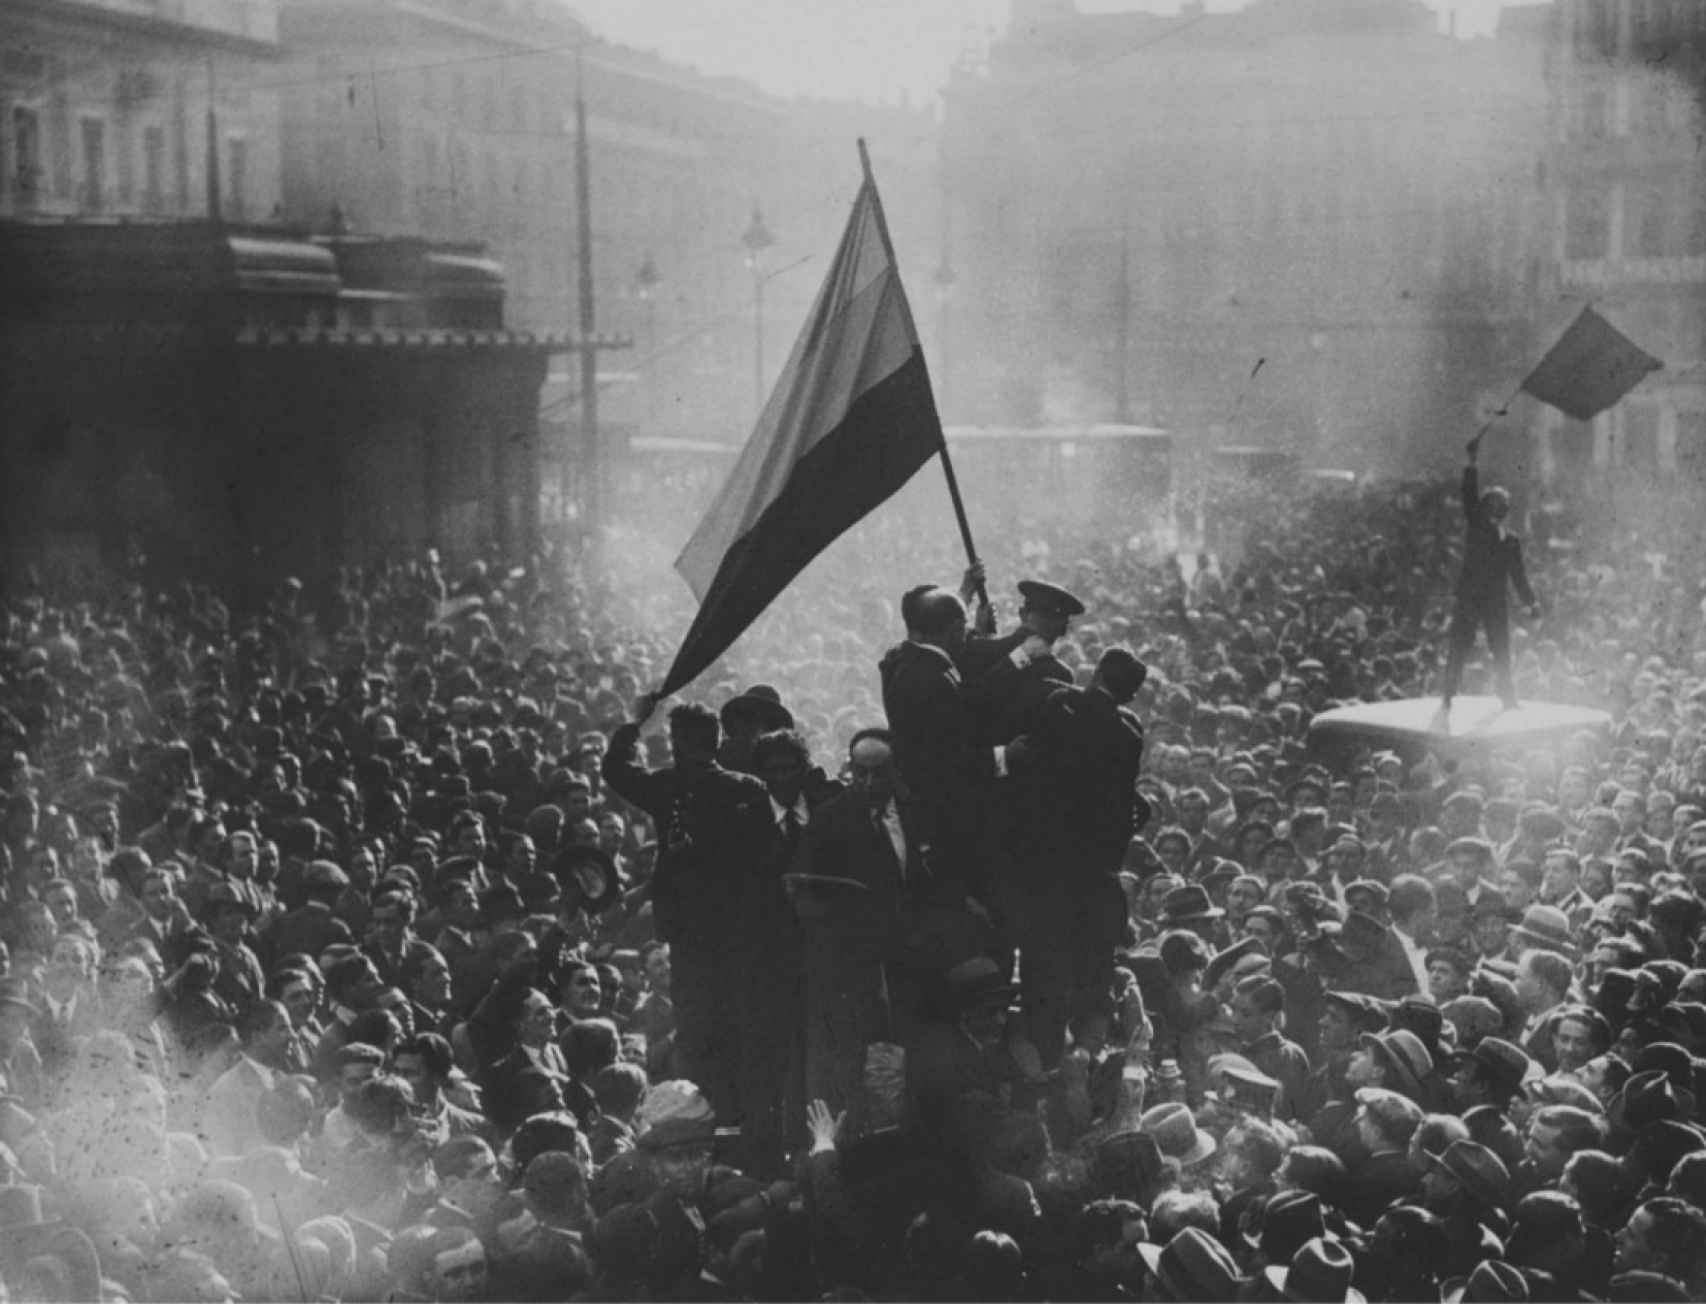 La histórica fotografía de Alfonso Sánchez Portela que muestra la proclamación de la República en Madrid.